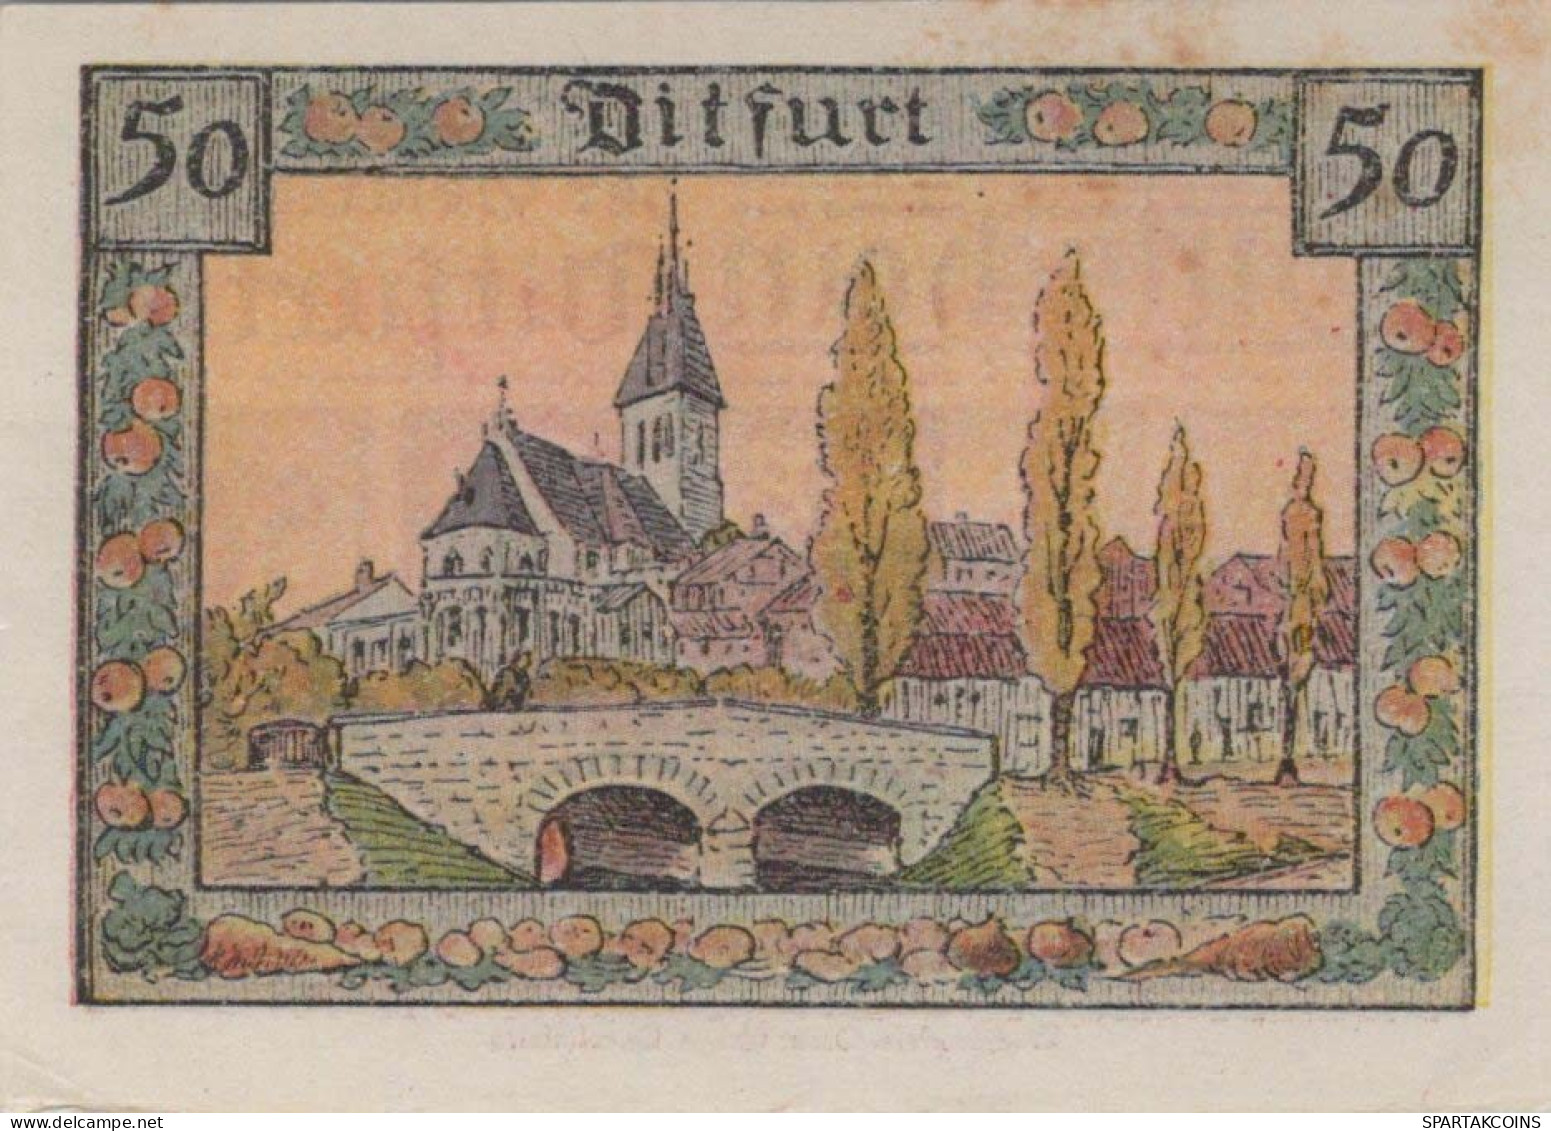 50 PFENNIG 1921 Stadt DITFURT Saxony UNC DEUTSCHLAND Notgeld Banknote #PA466 - [11] Local Banknote Issues